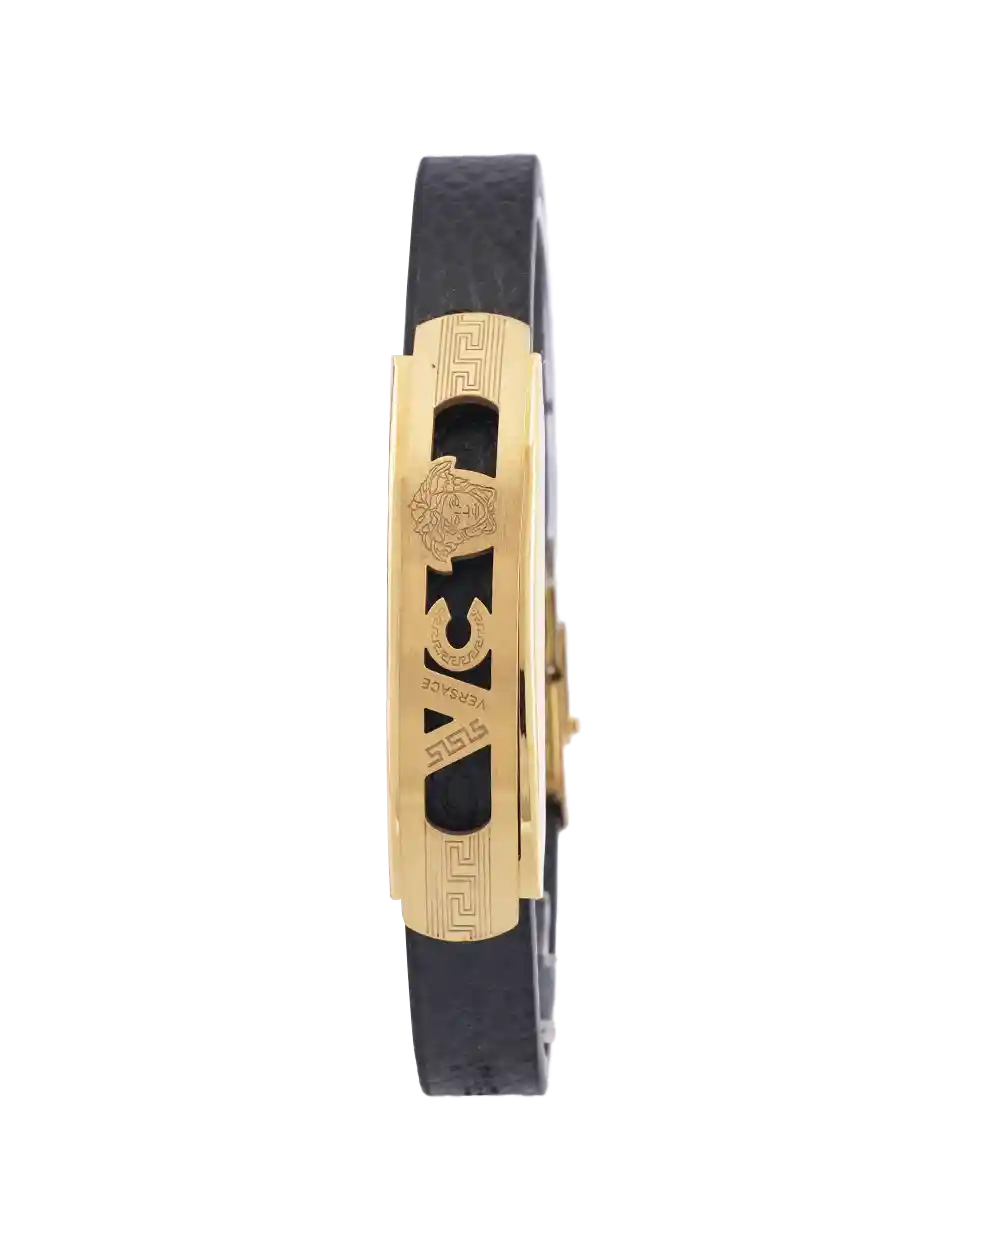 خرید دستبند چرمی مردانه طرح ورساچه مدل 1612 با بهترین قیمت به همراه ارسال رایگان به سراسر ایران و جعبه ی کادویی | دستبند چرم versace